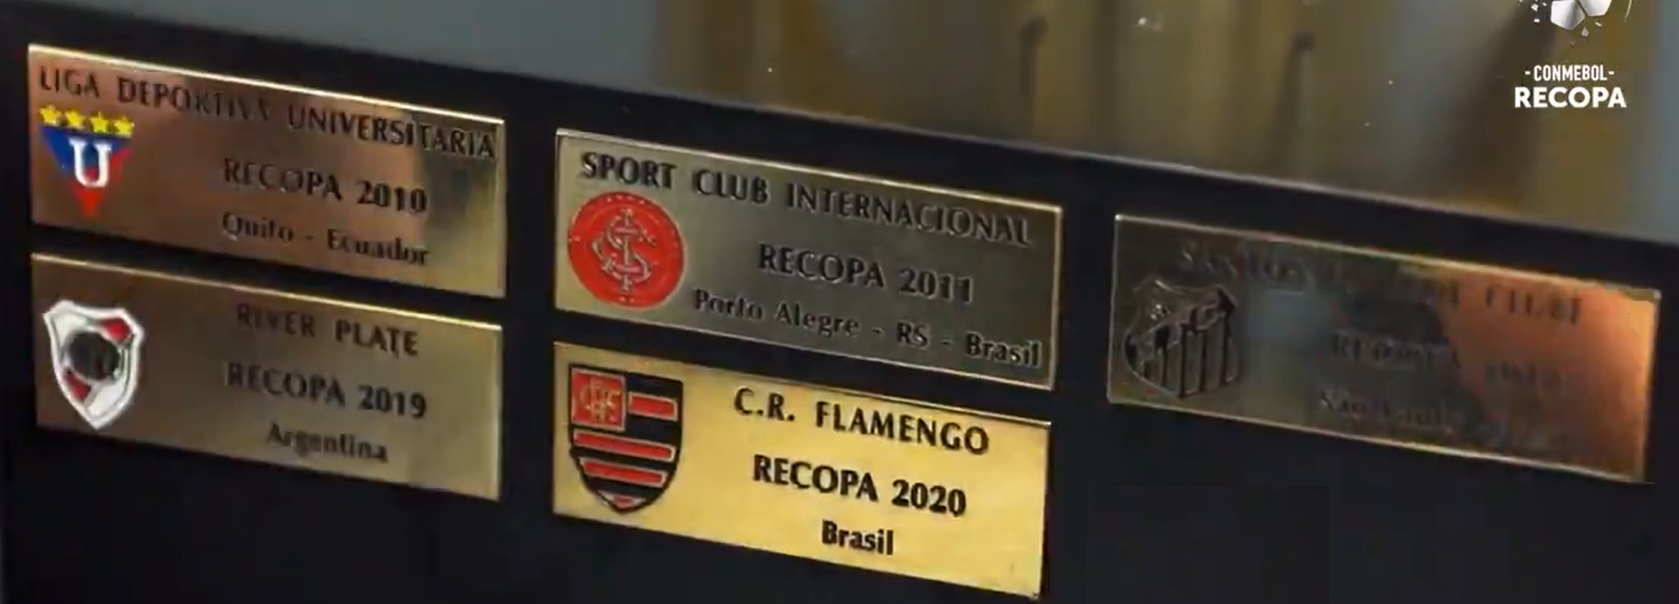 Placa Campeão da Recopa Sulamericana 2020